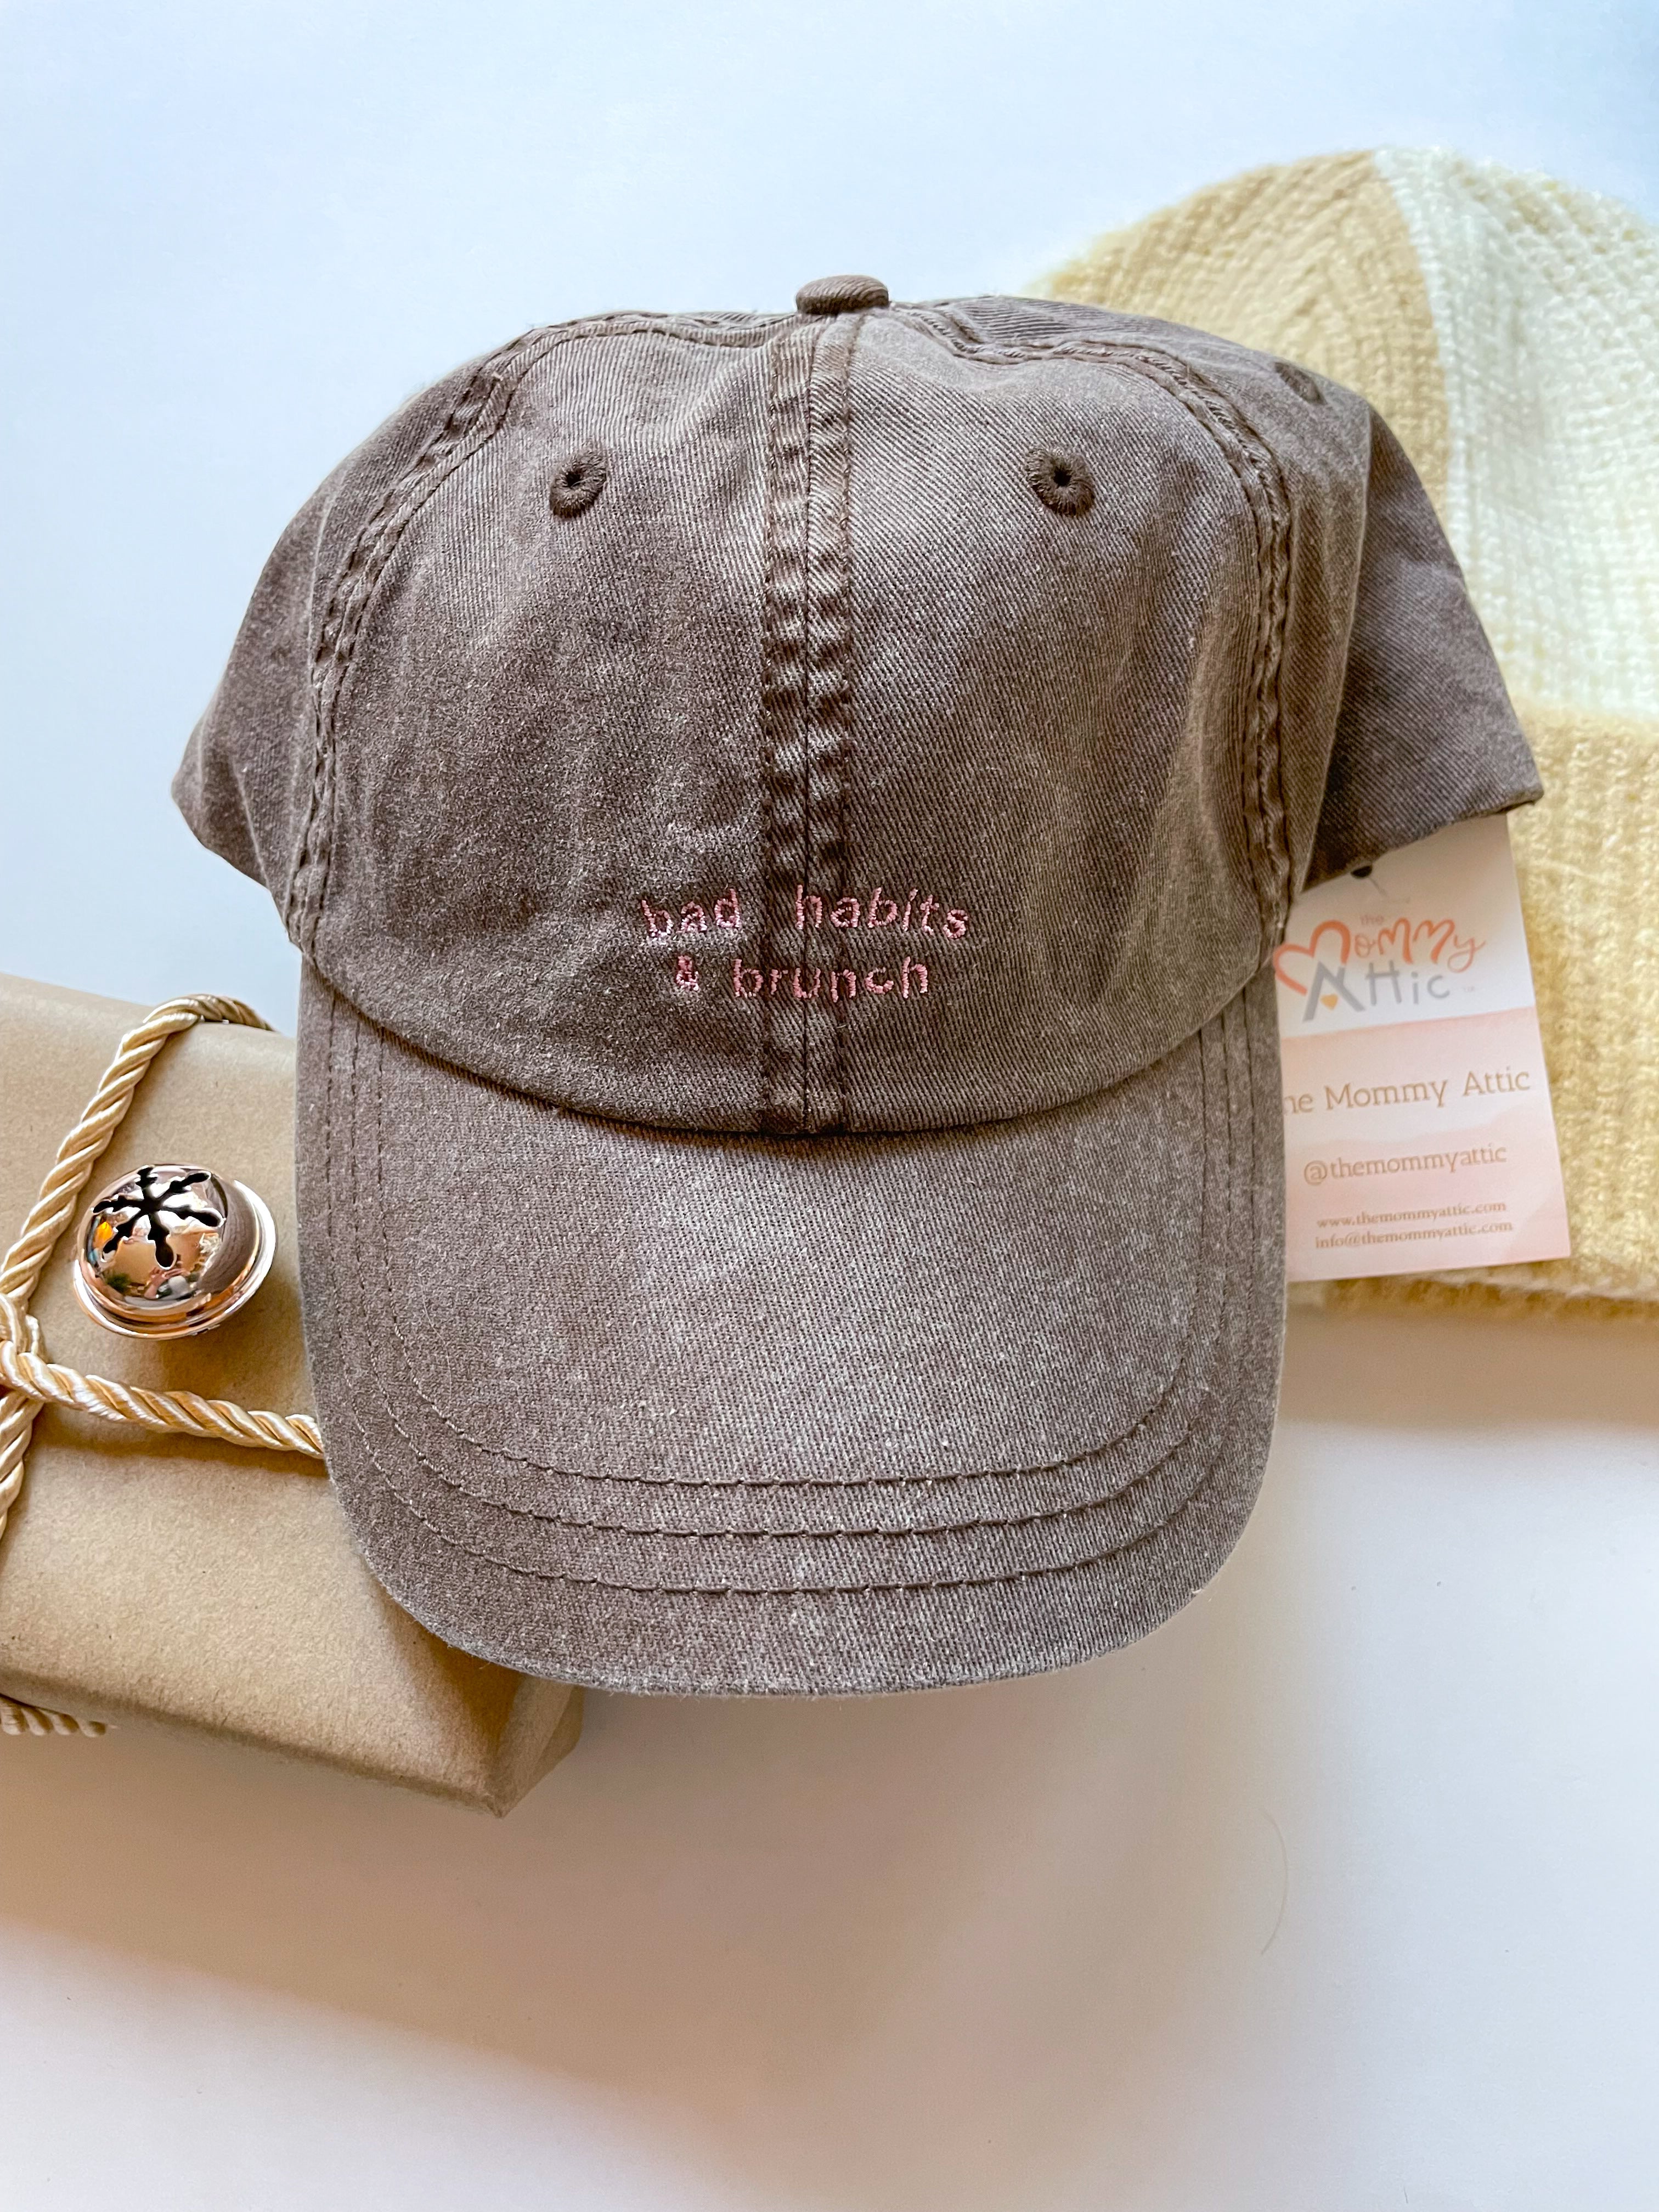 NEW - Bad Habits & Brunch - Vintage Wash Baseball Hats